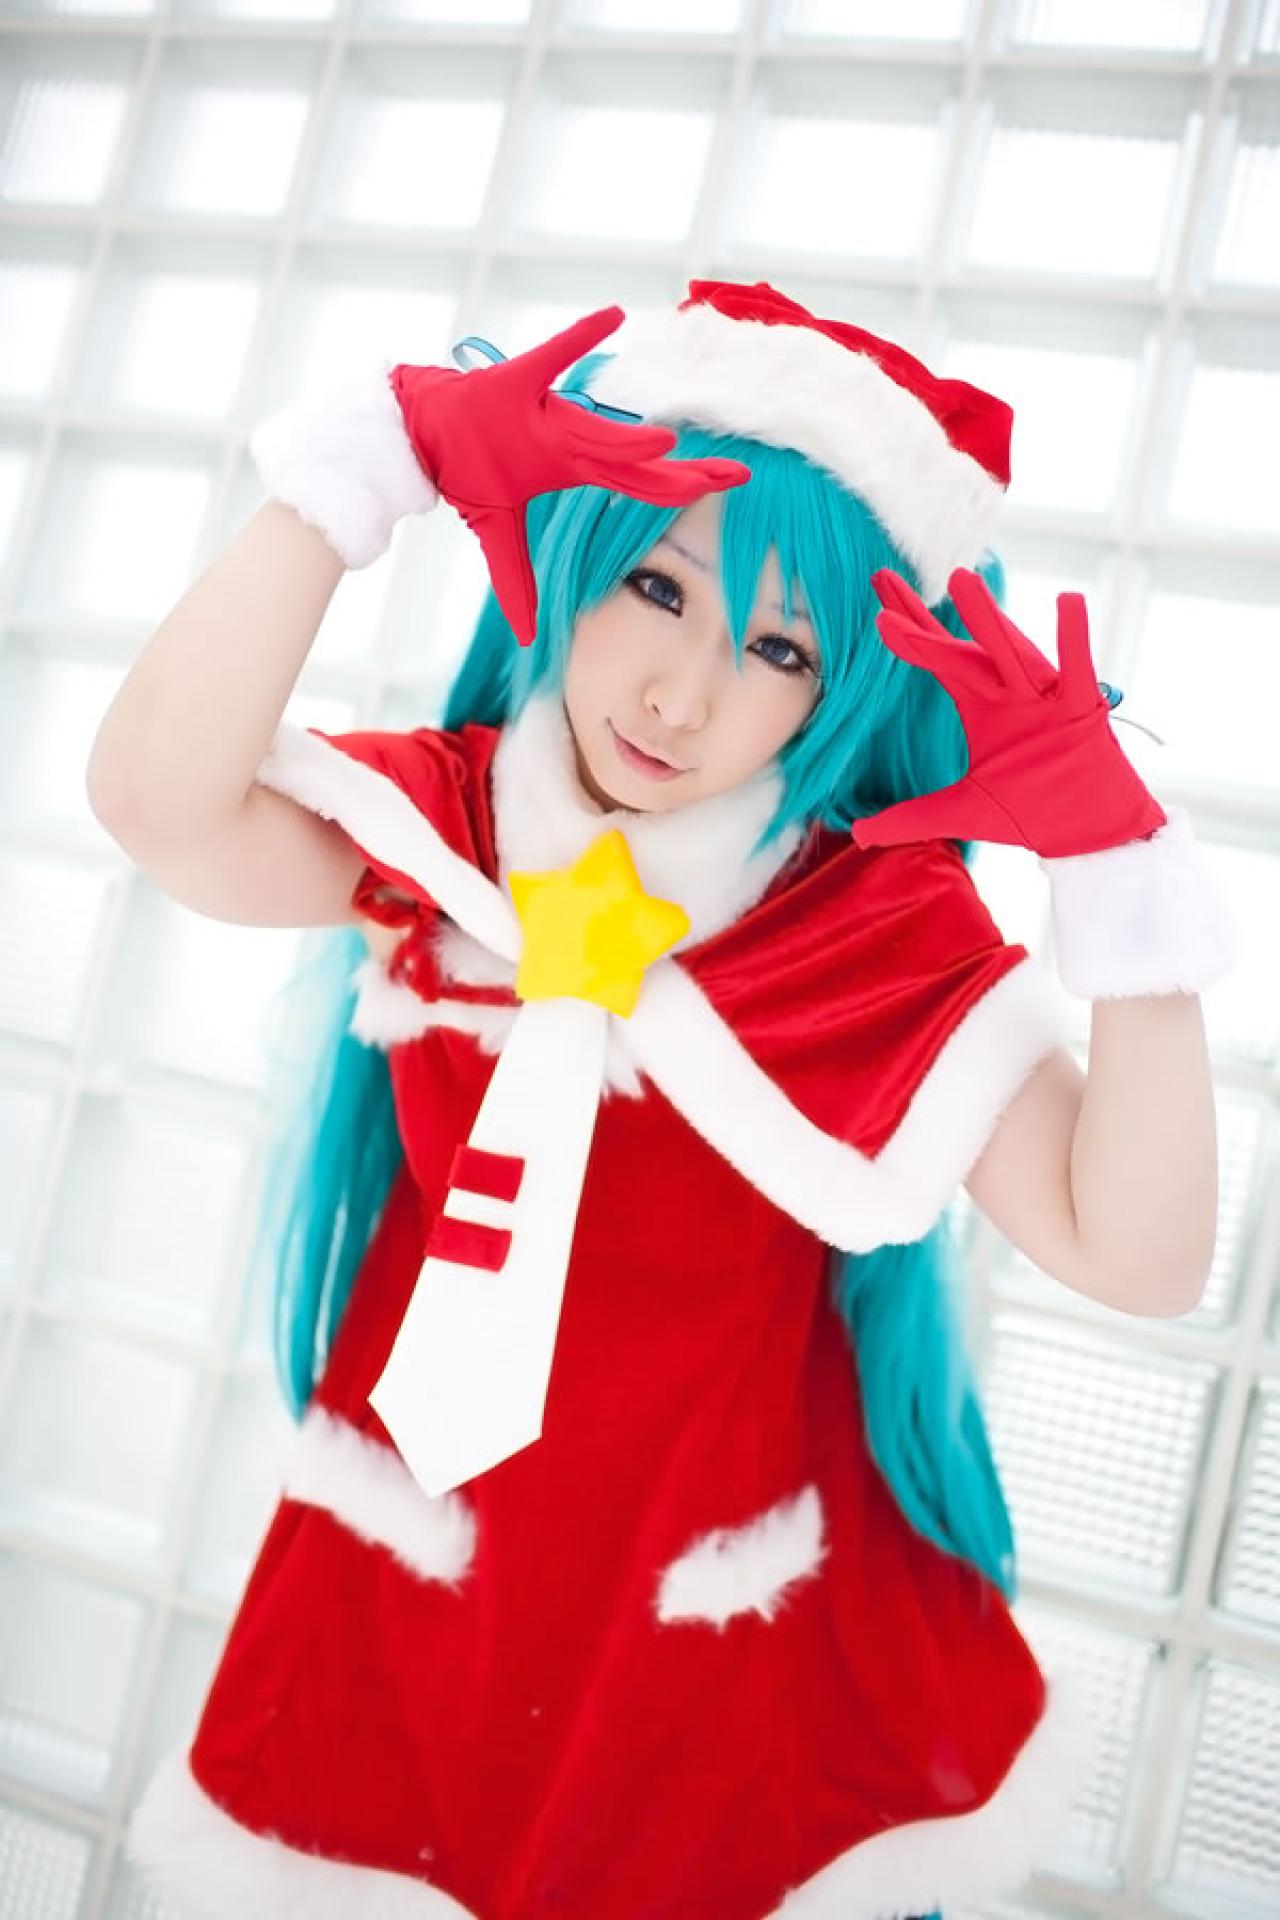 Miiko穿着初音圣诞礼服两只手作心形手势，把脸包围起来